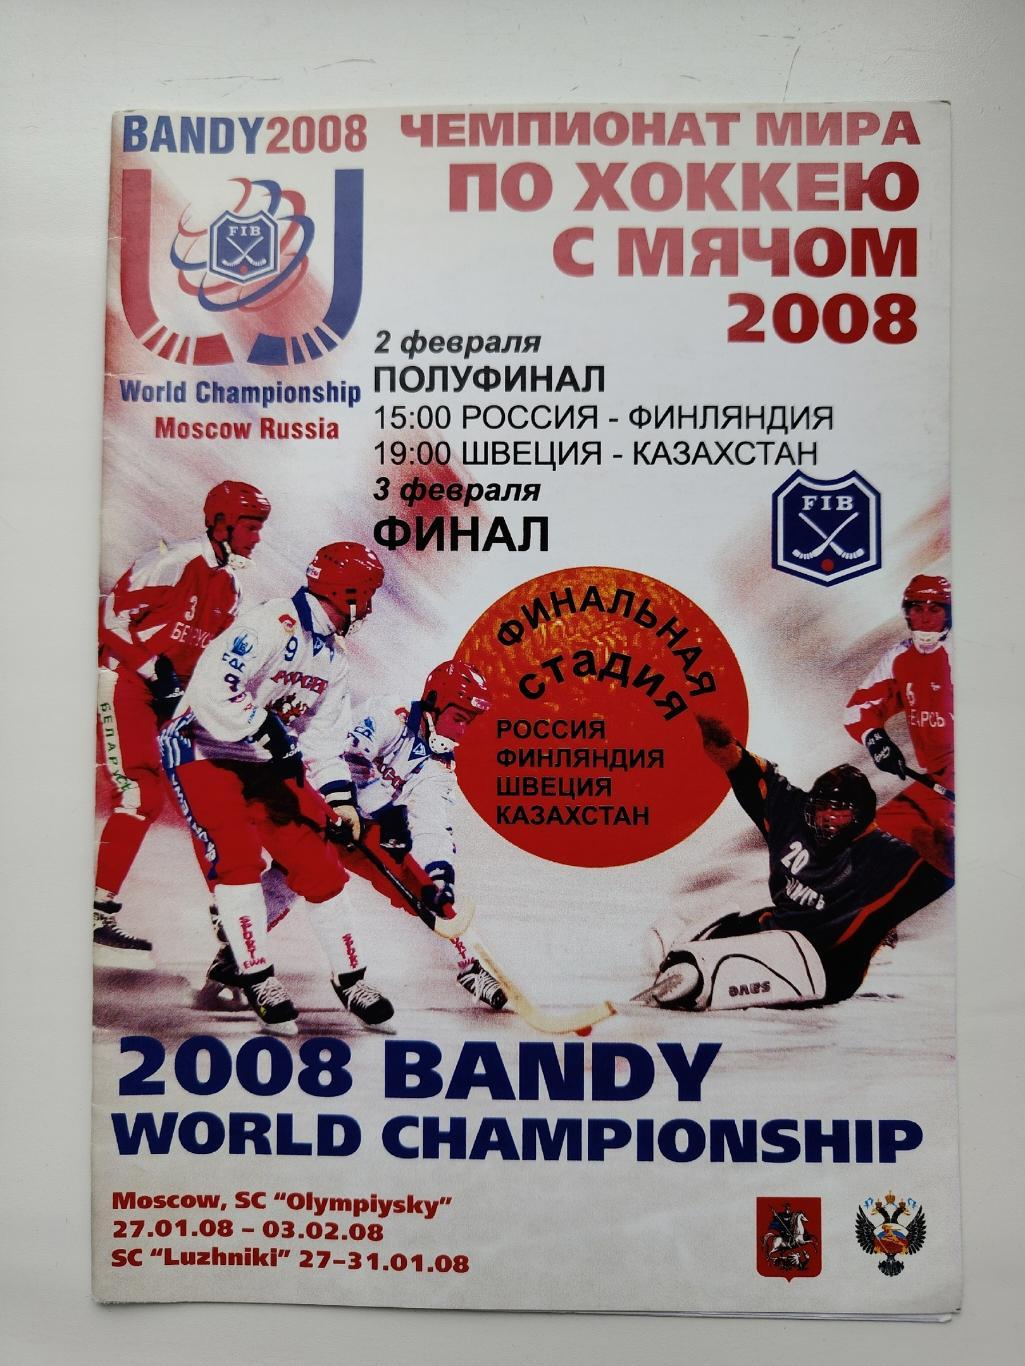 Хоккей с мячом Чемпионат Мира Москва 2008 Россия - Финляндия Швеция - Казахстан